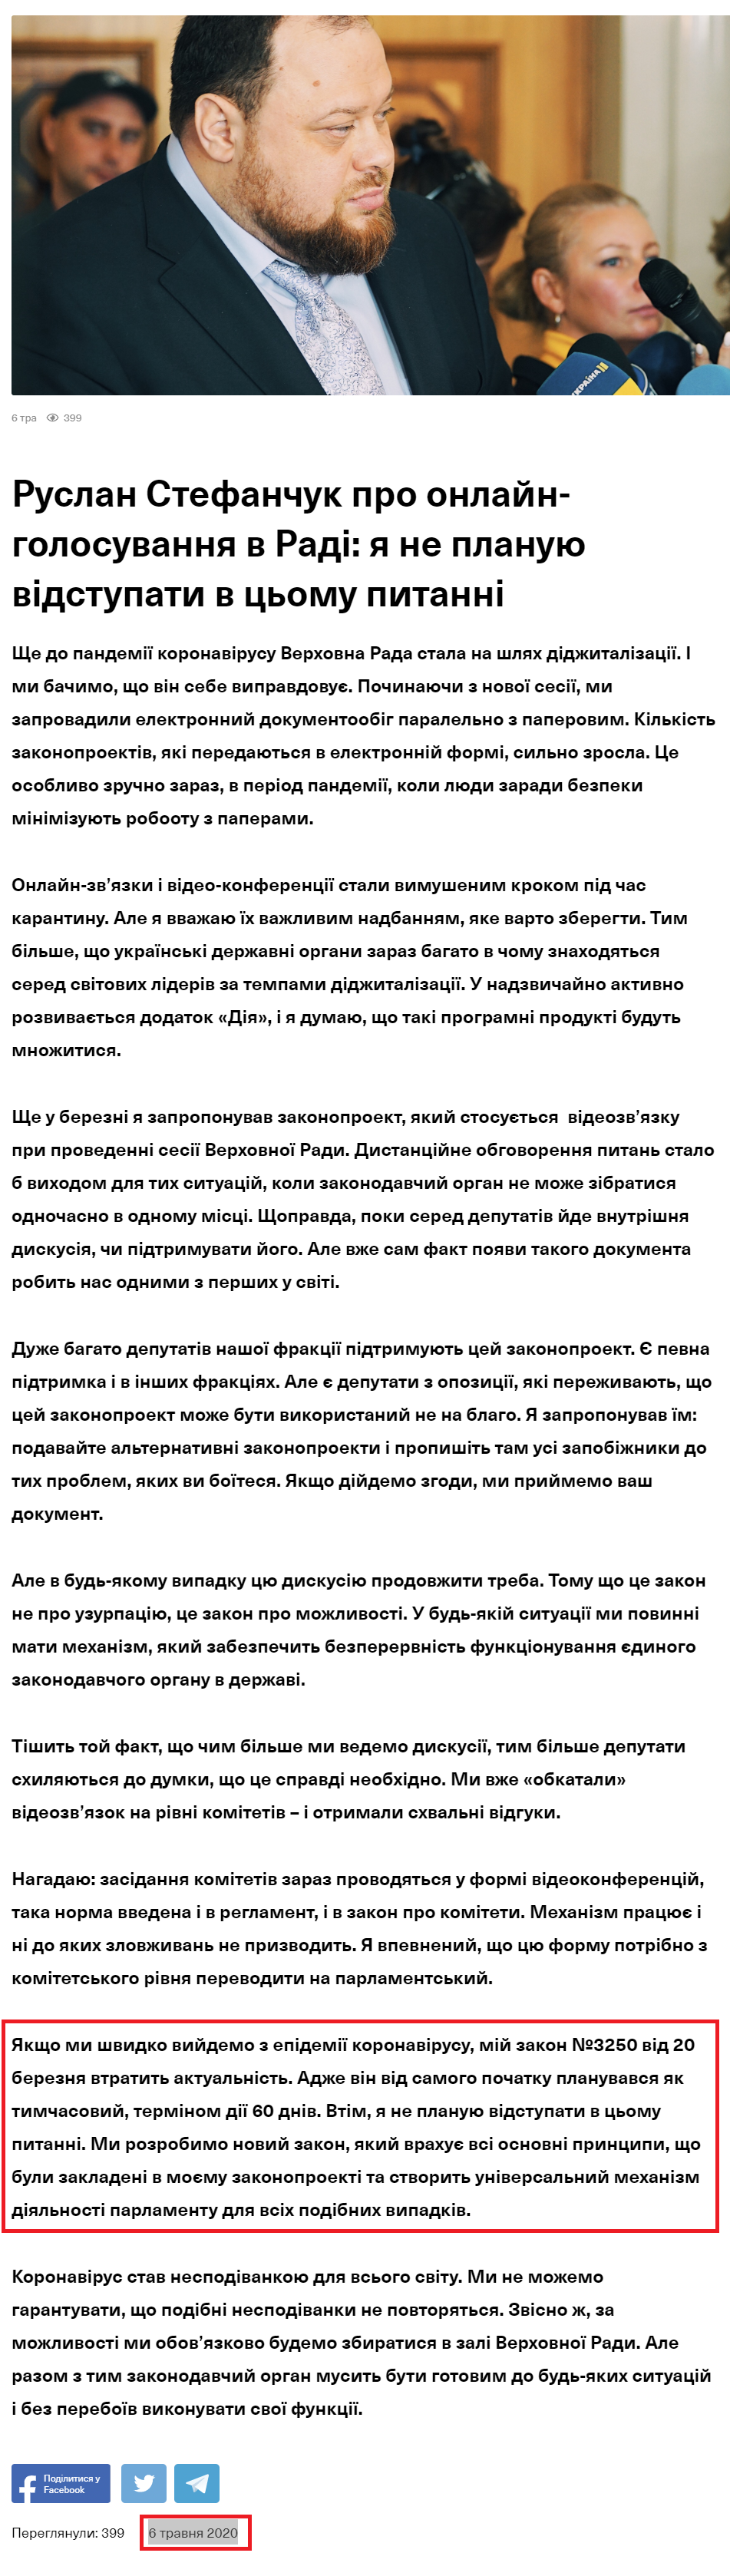 https://sluga-narodu.com/blog/ruslan-stefanchuk-pro-onlajn-golosuvannya-v-radi-ya-ne-planuyu-vidstupati-v-czomu-pitanni